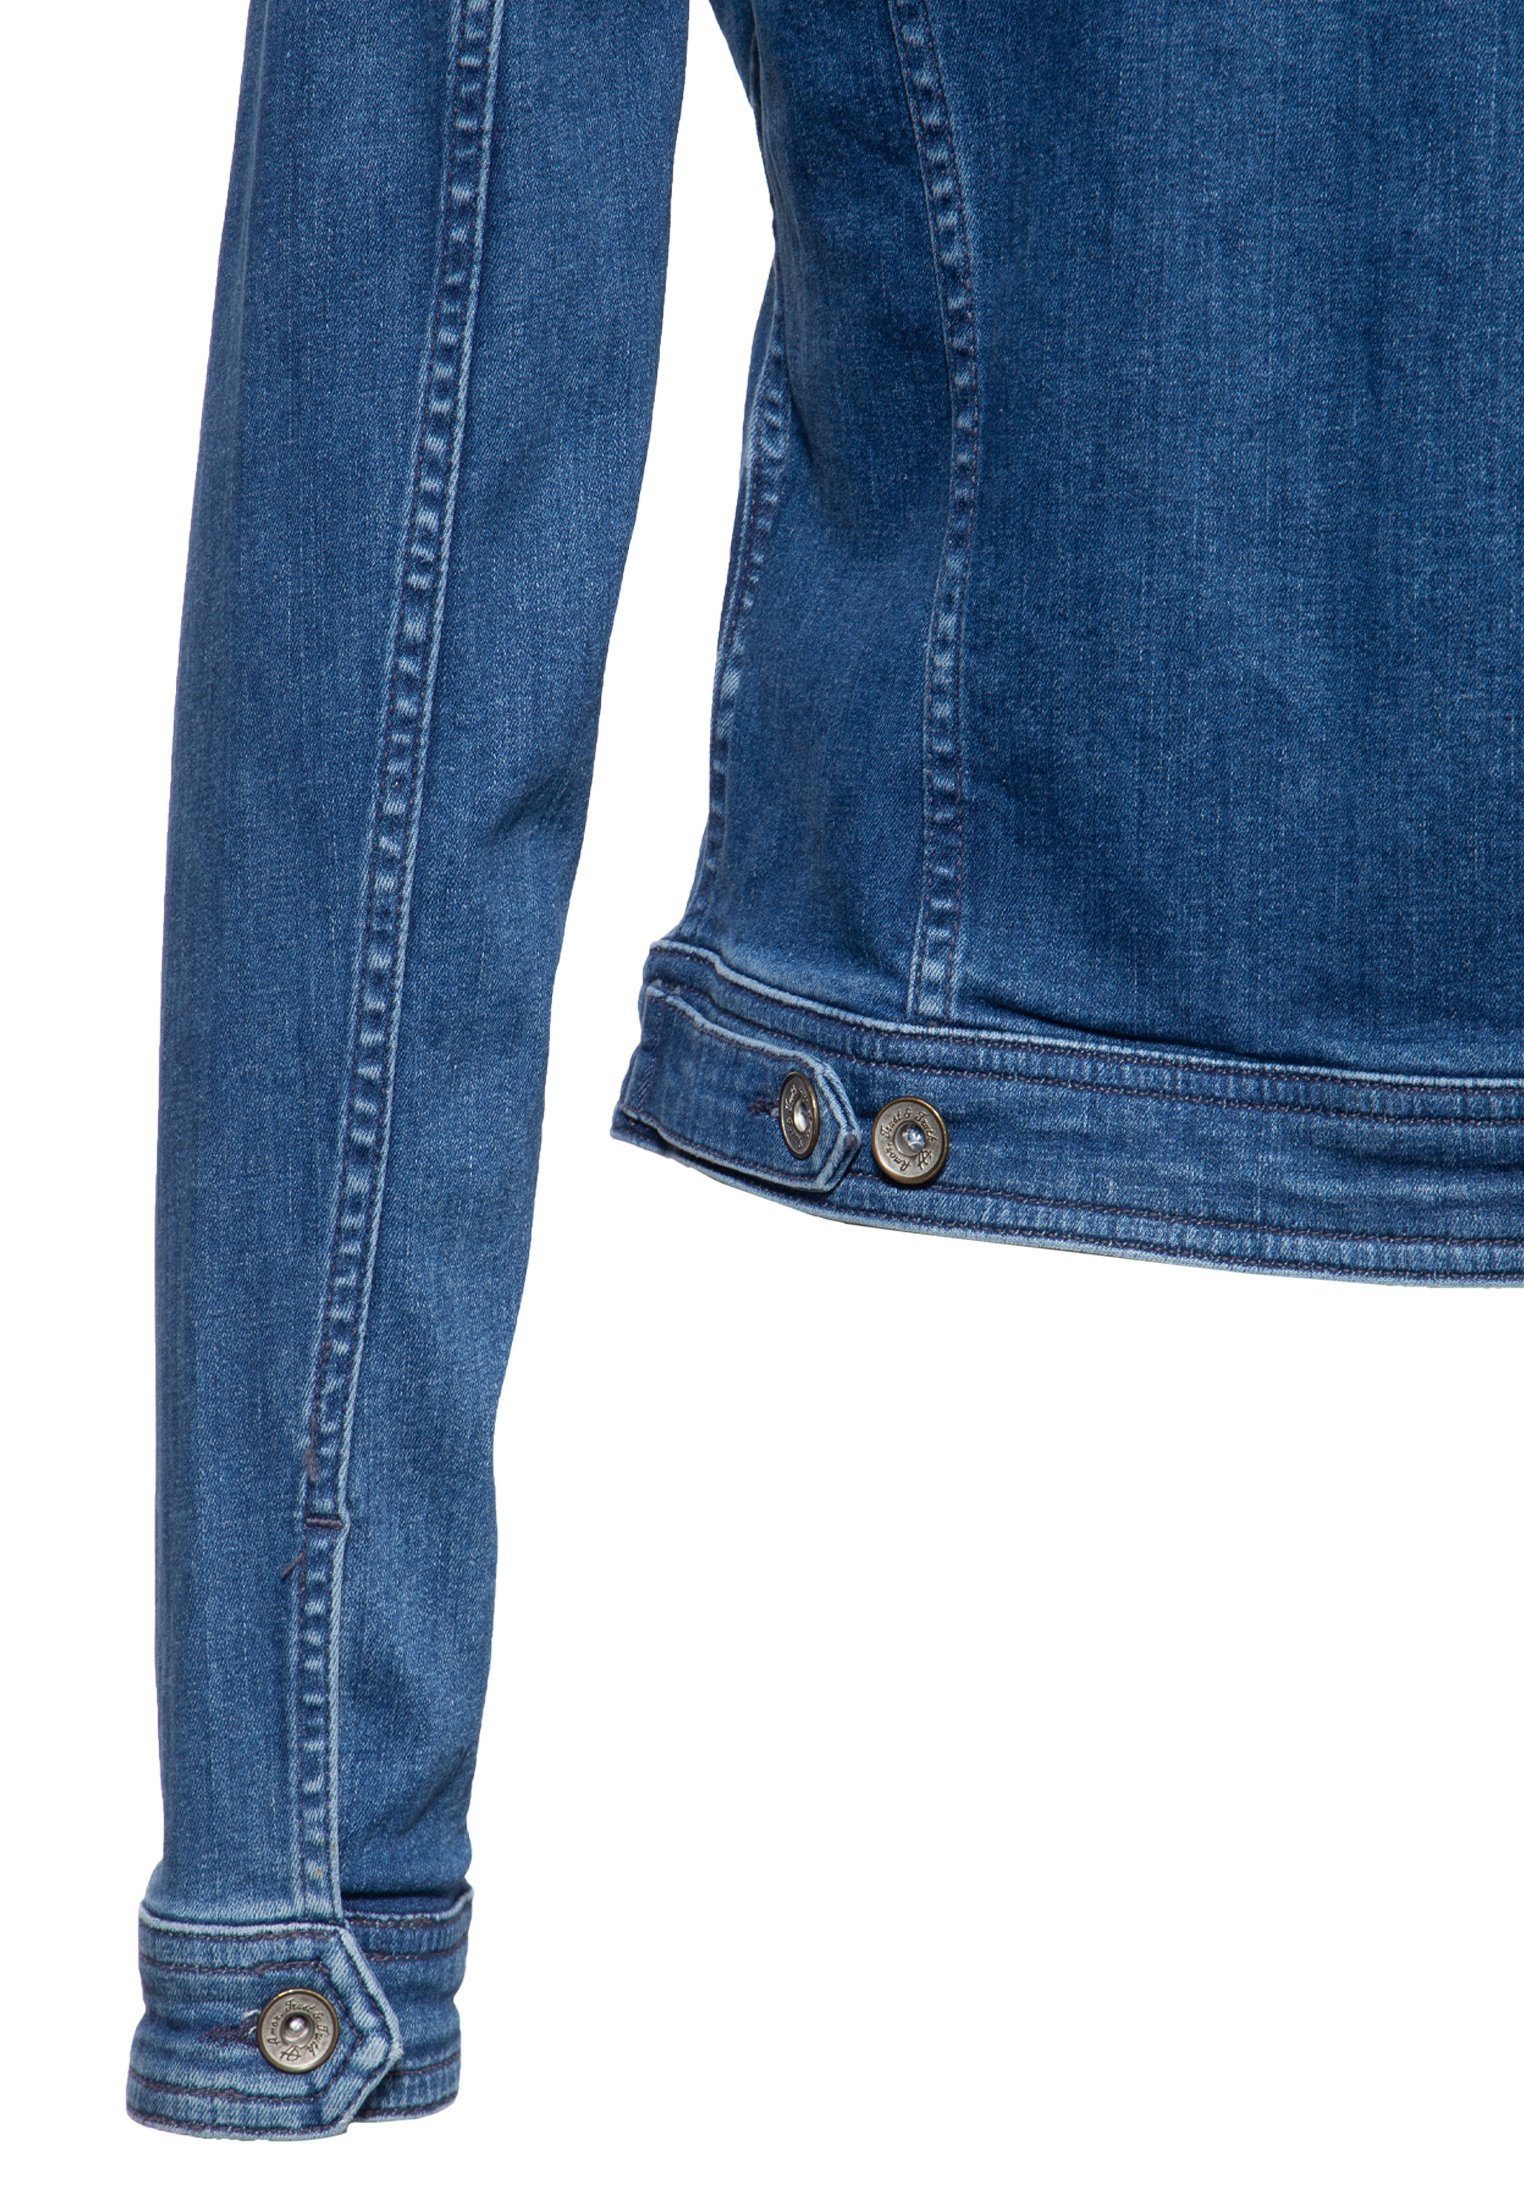 Damen Jacken ATT Jeans Jeansjacke Alicia im klassischen Design mit Waschungen